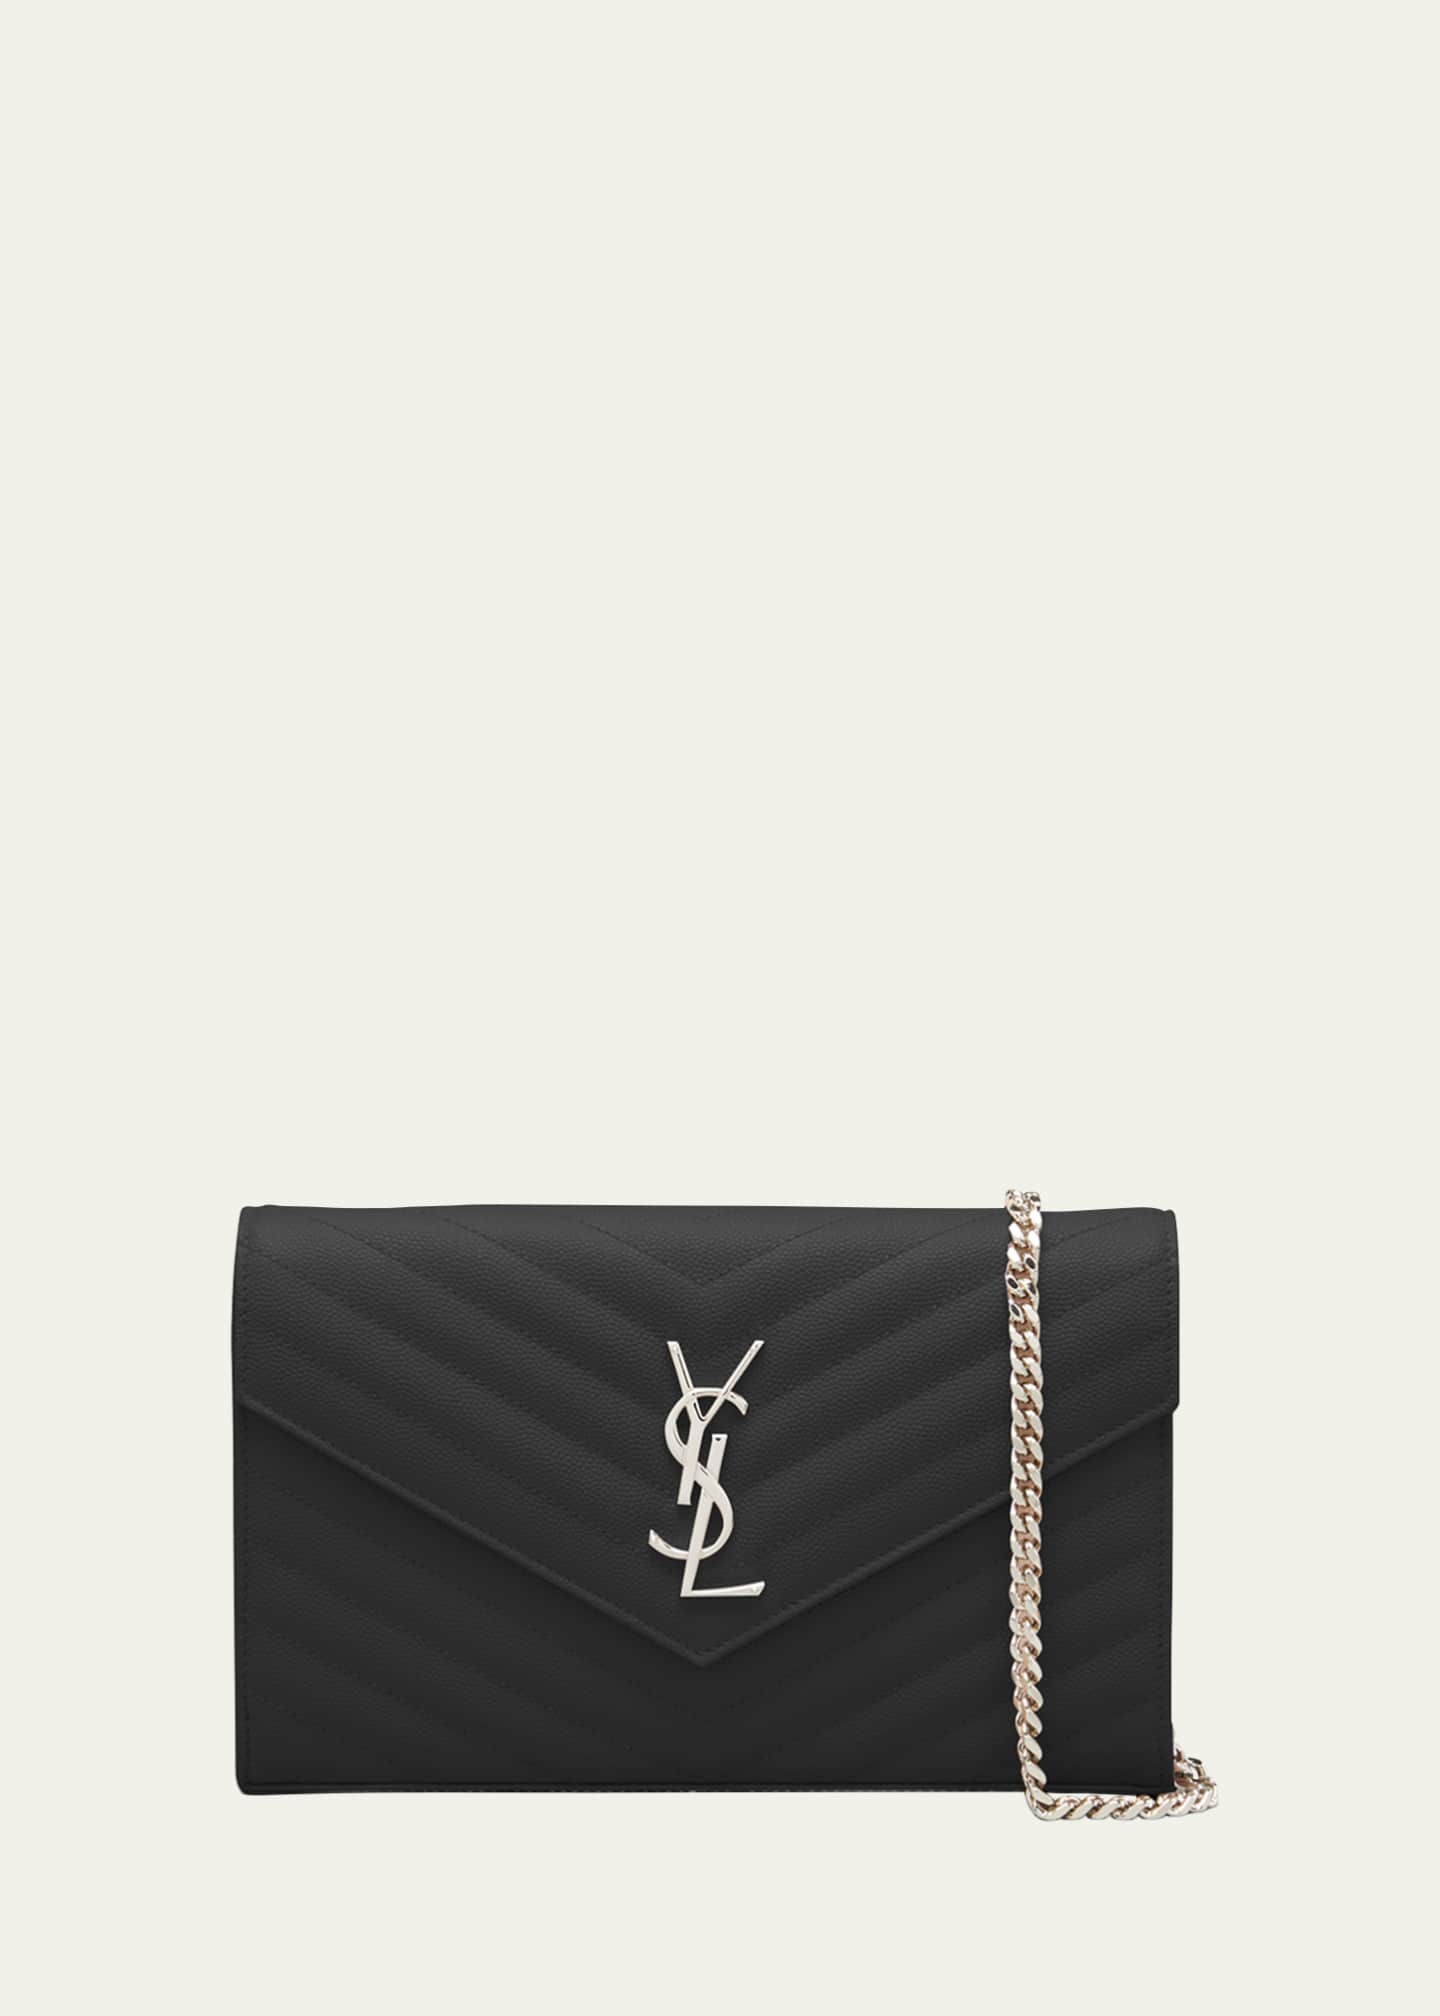 Saint Laurent Monogram Leather Chain Wallet Black